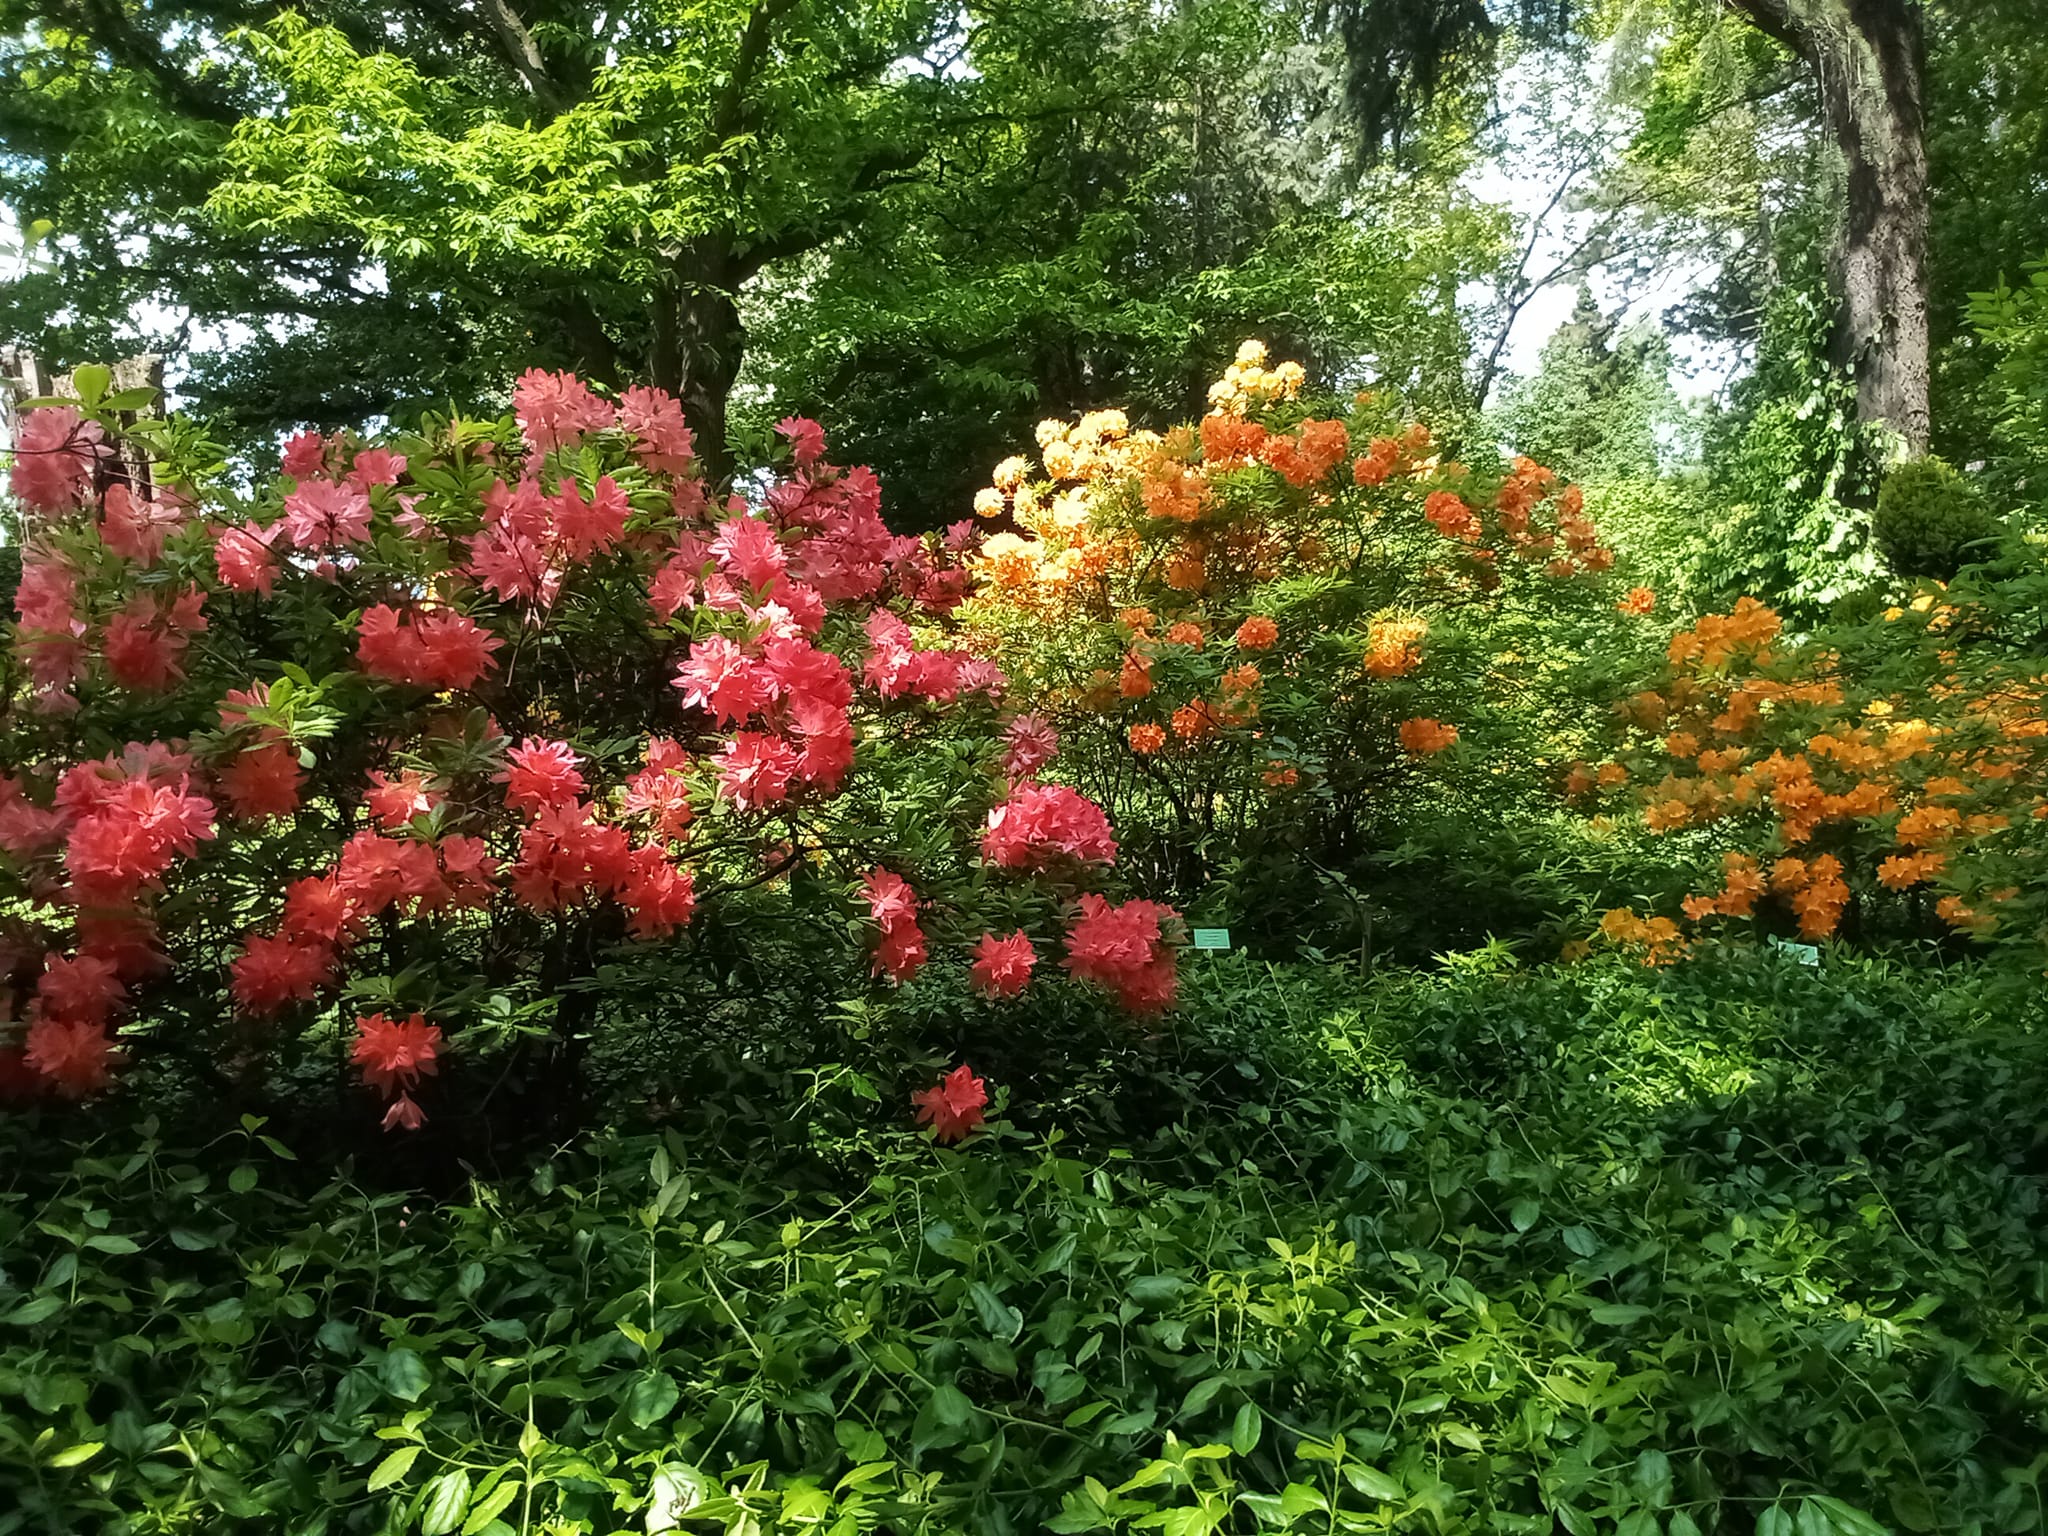 Ogród w Wojsławicach, na zdjęciu trzy kwitnące rododendrony.